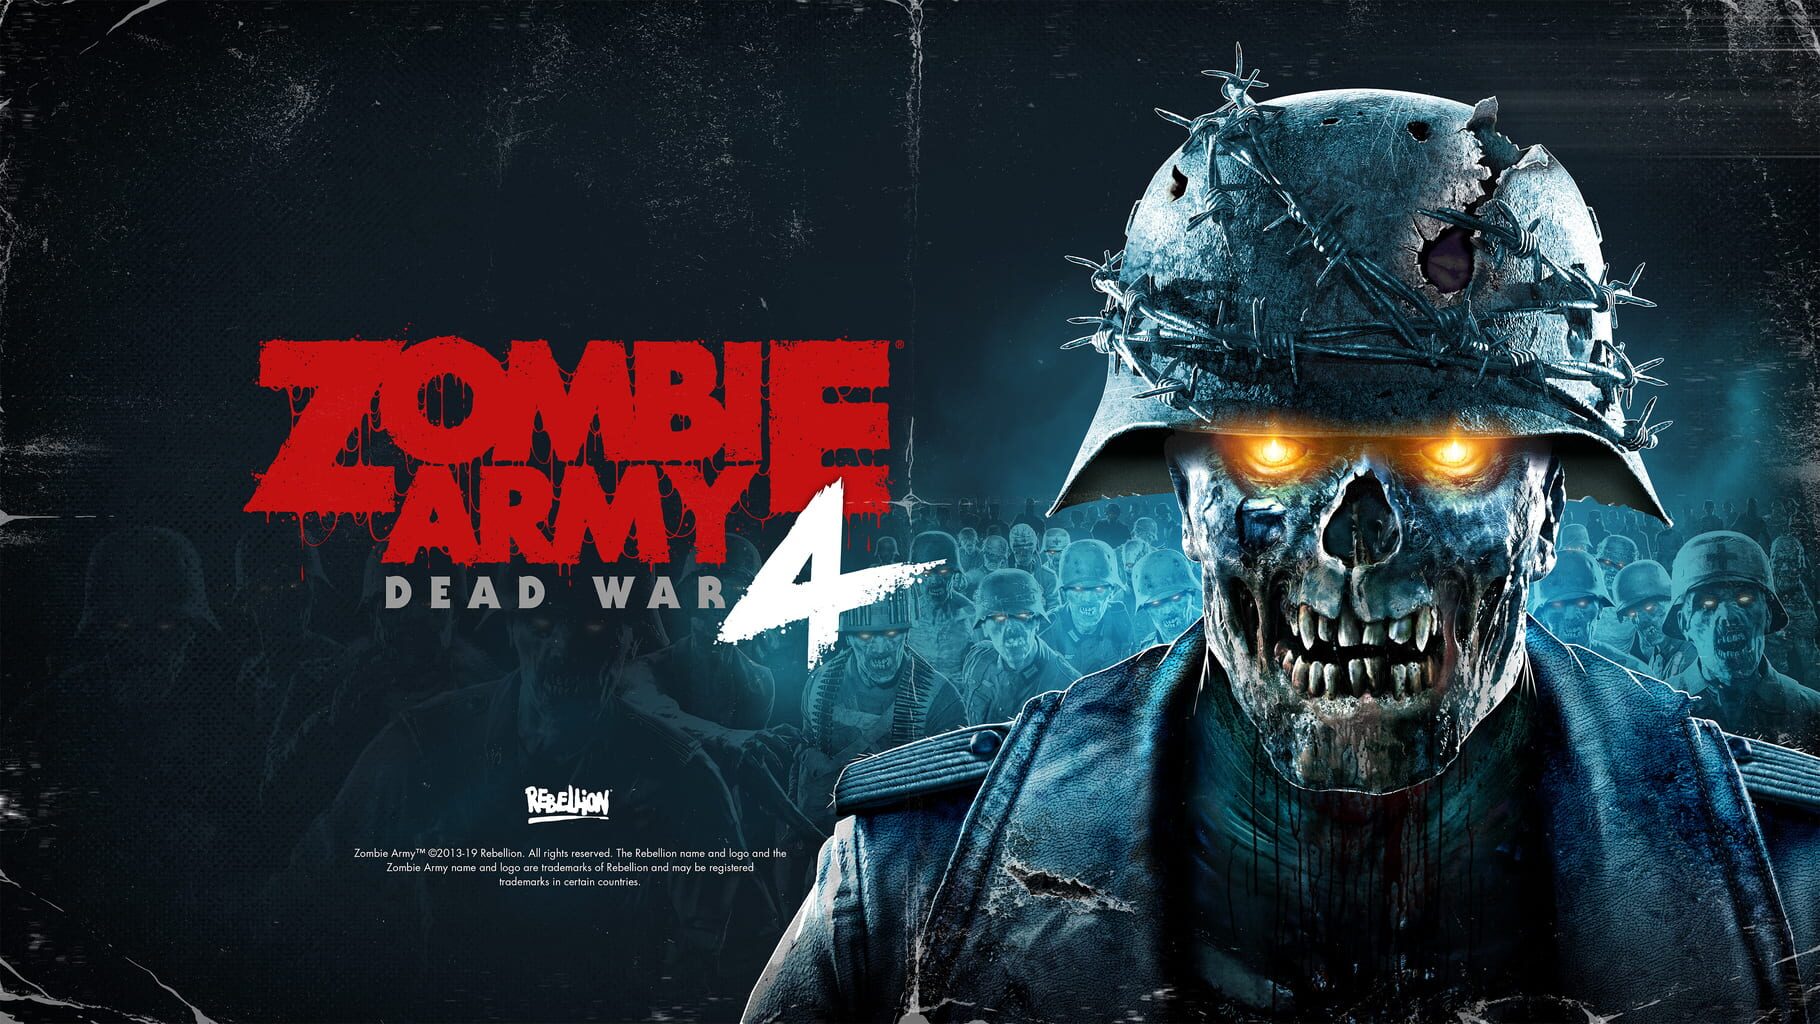 Arte - Zombie Army 4: Dead War